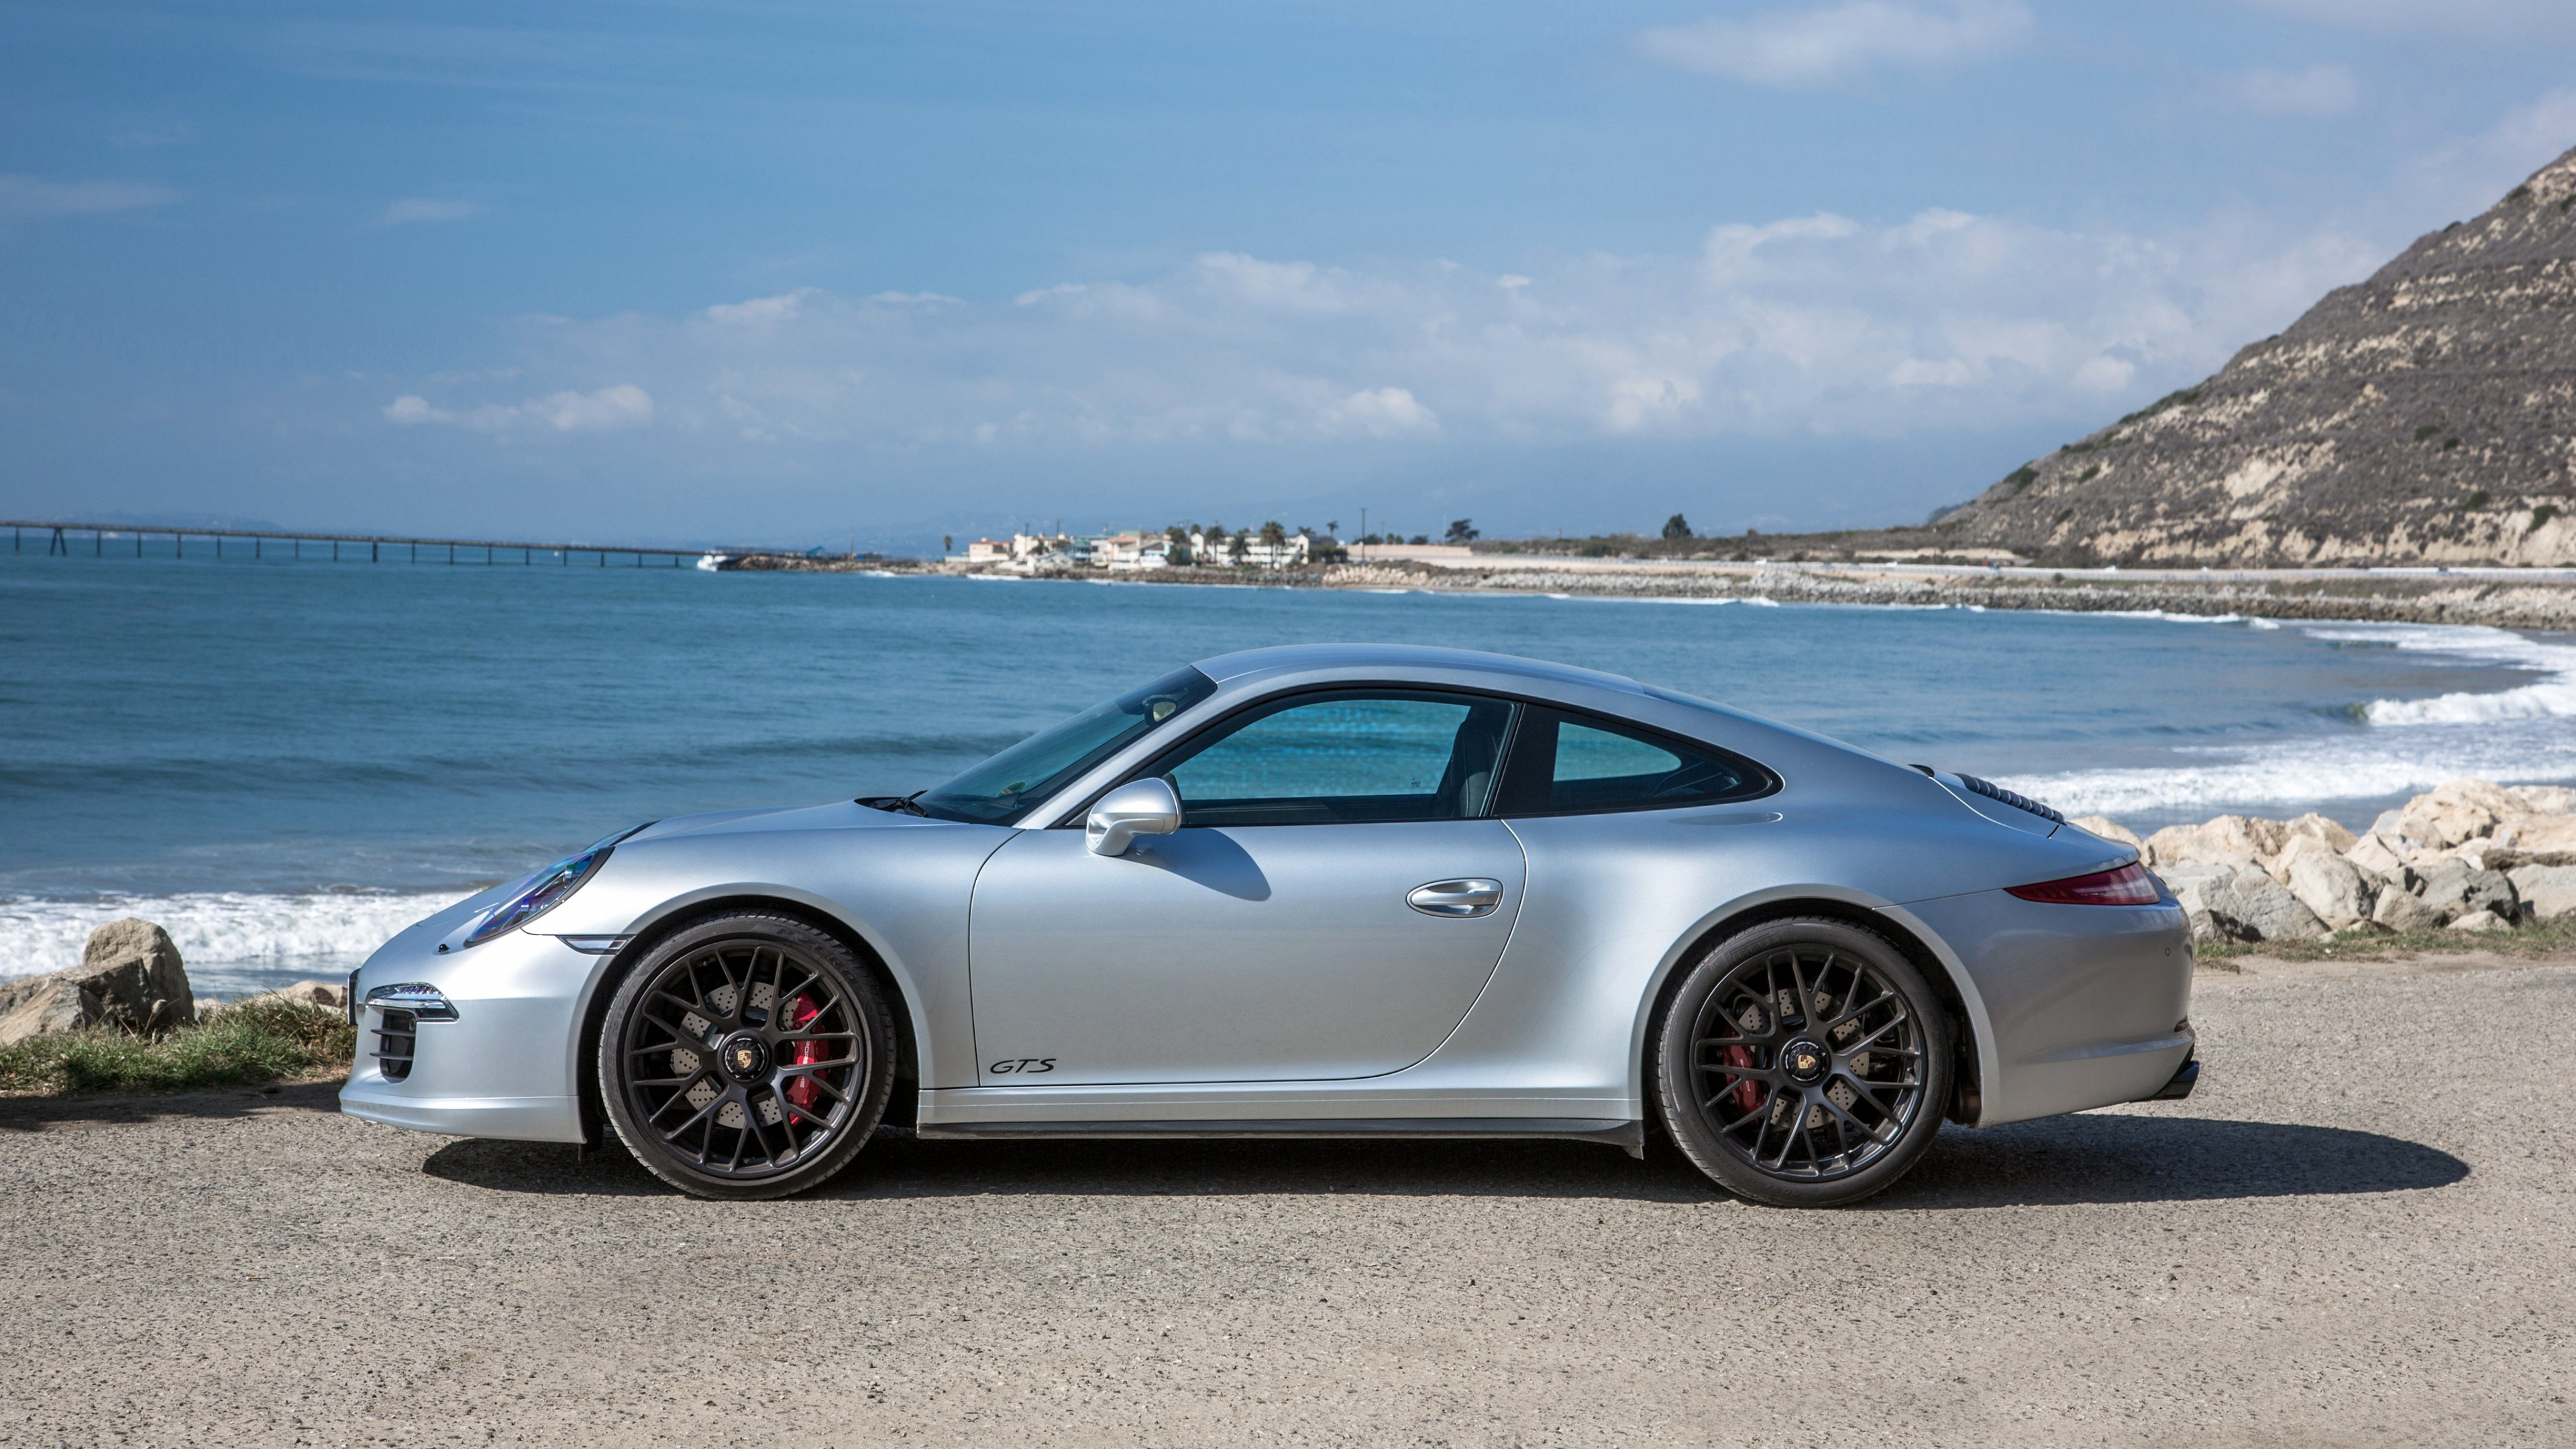 Silver Porsche 911 Estacionado en la Orilla Del Mar Durante el Día. Wallpaper in 3840x2160 Resolution